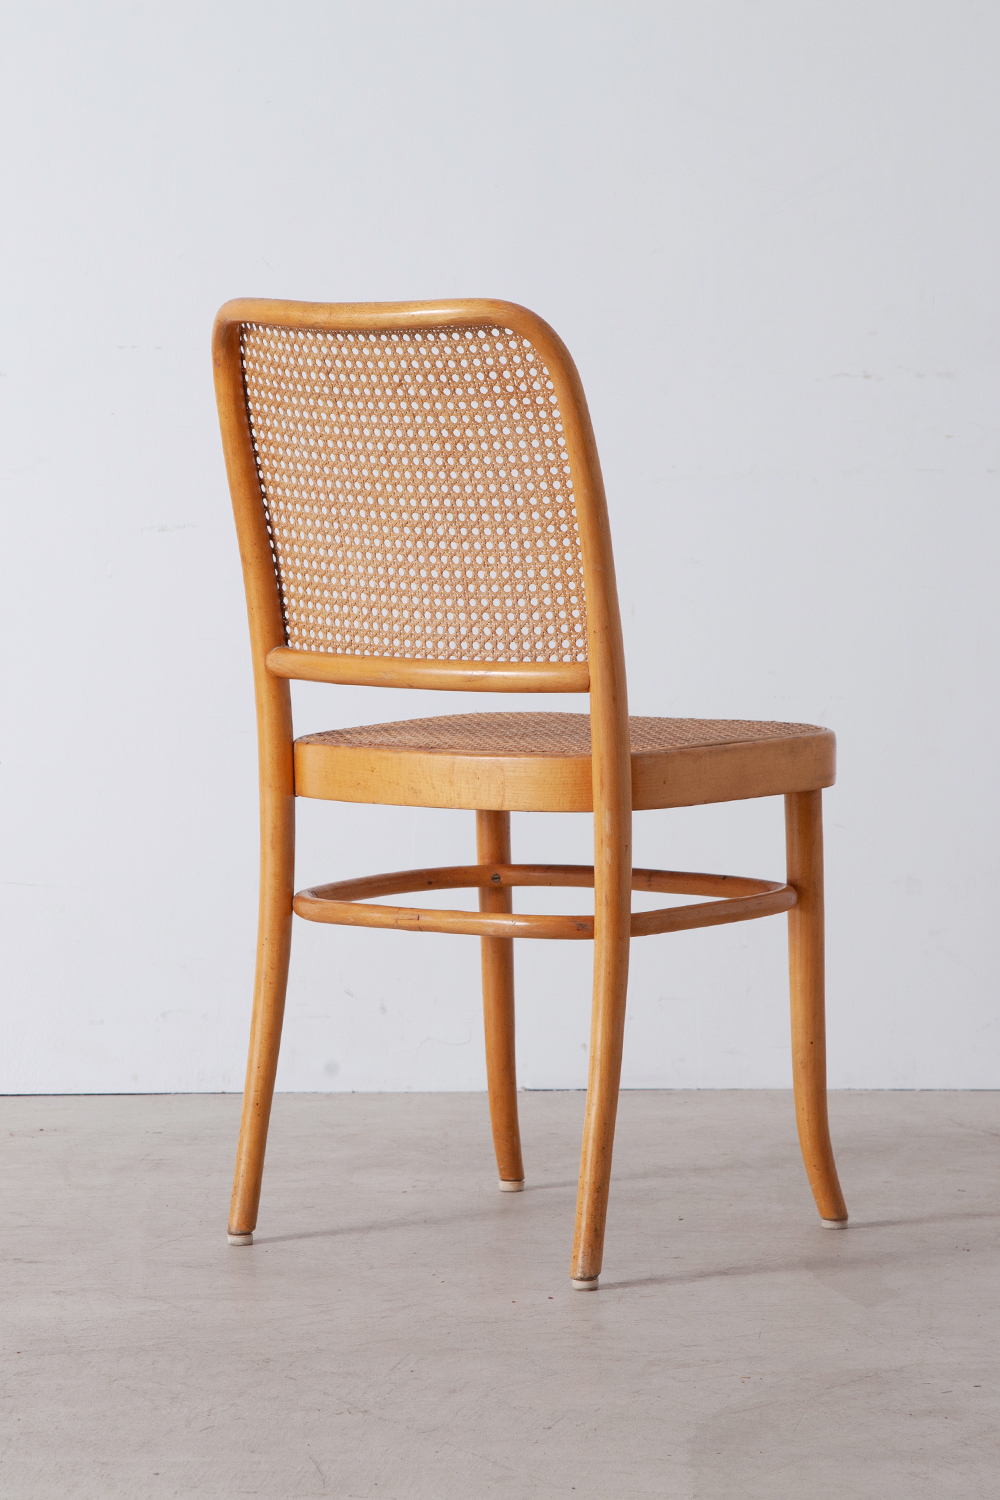 stoop | Bent Wood Chair No.811 “Prague” by Josef Hoffmann for THONET